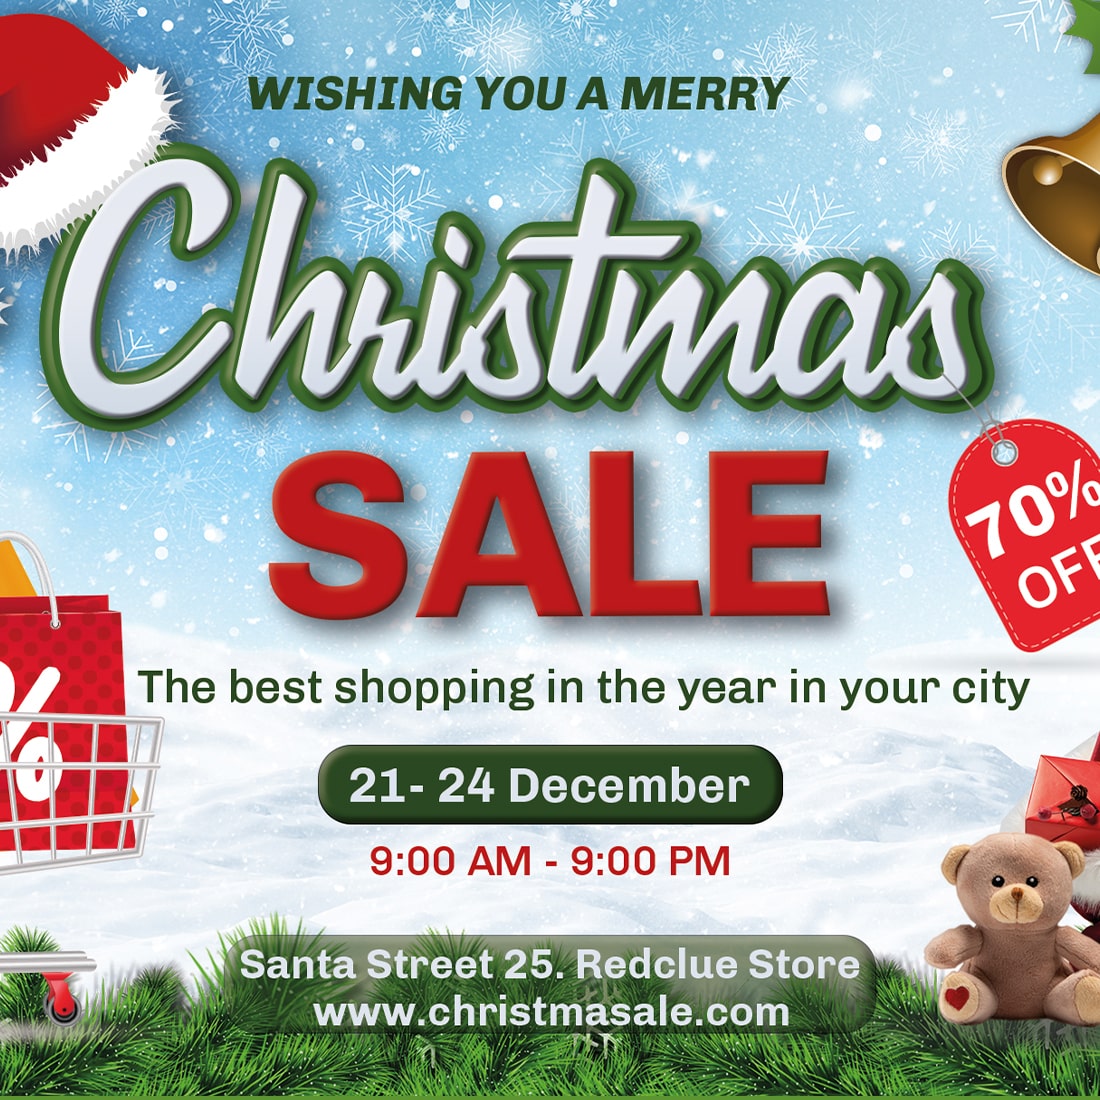 Cover image of Printable Christmas Sale Flyer.